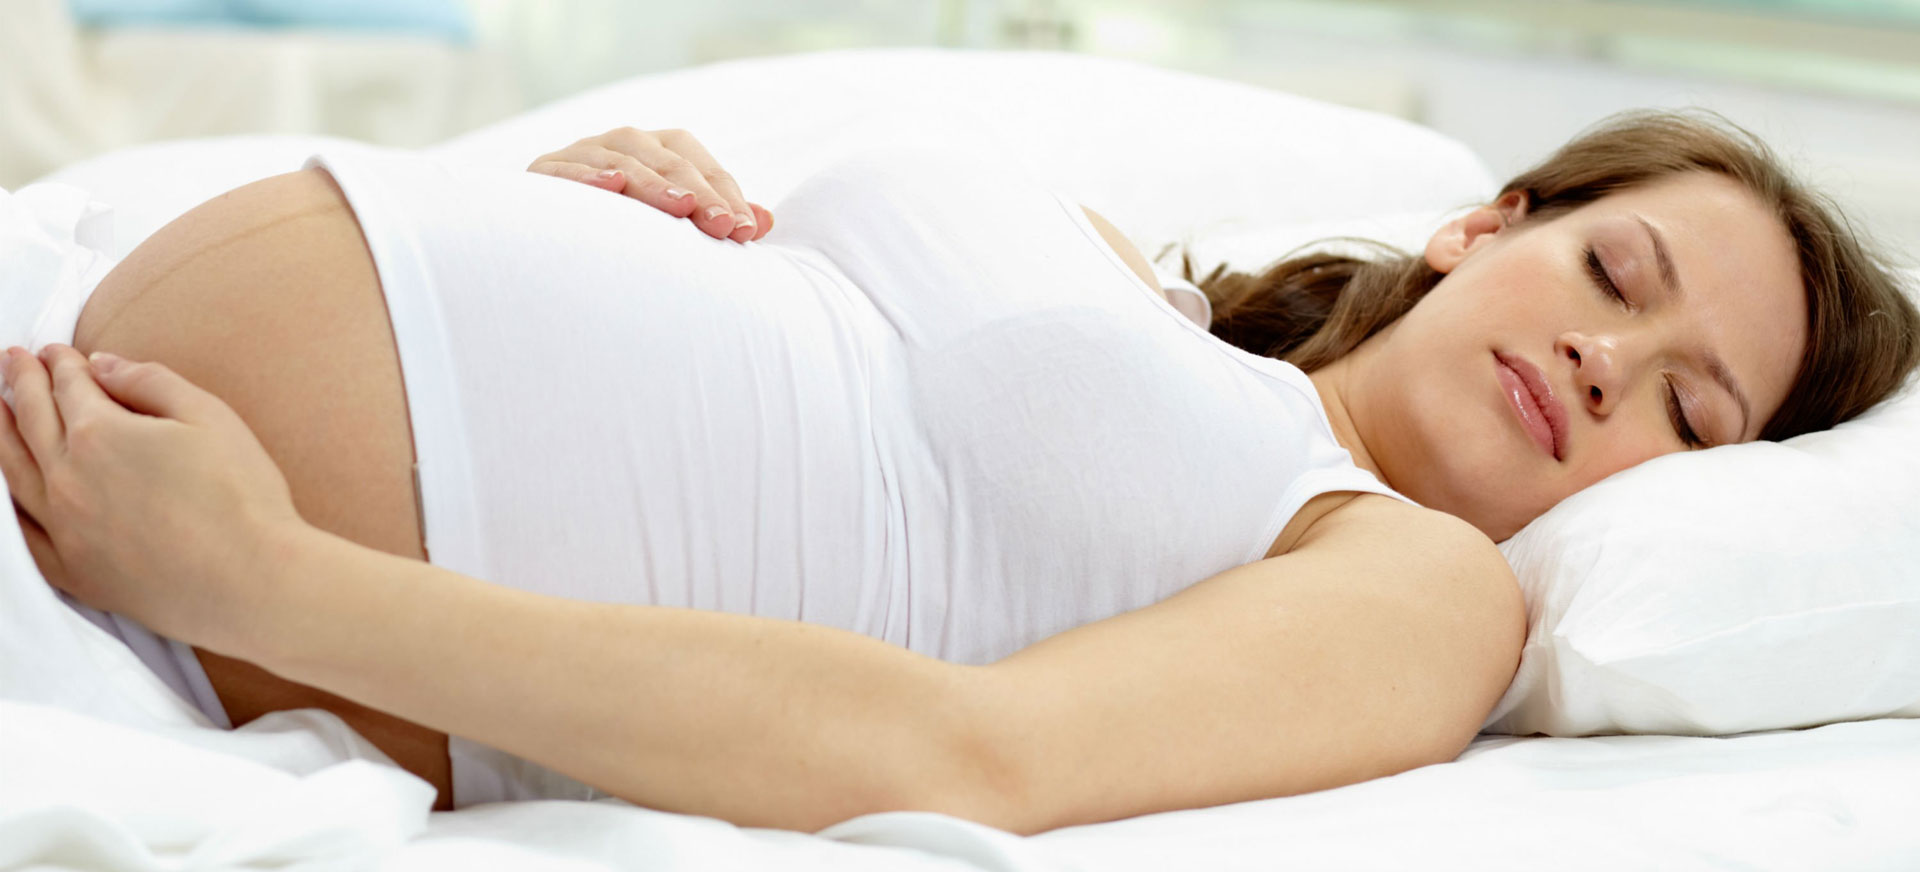 Последствия стресса во время беременности: стоит ли переживать?